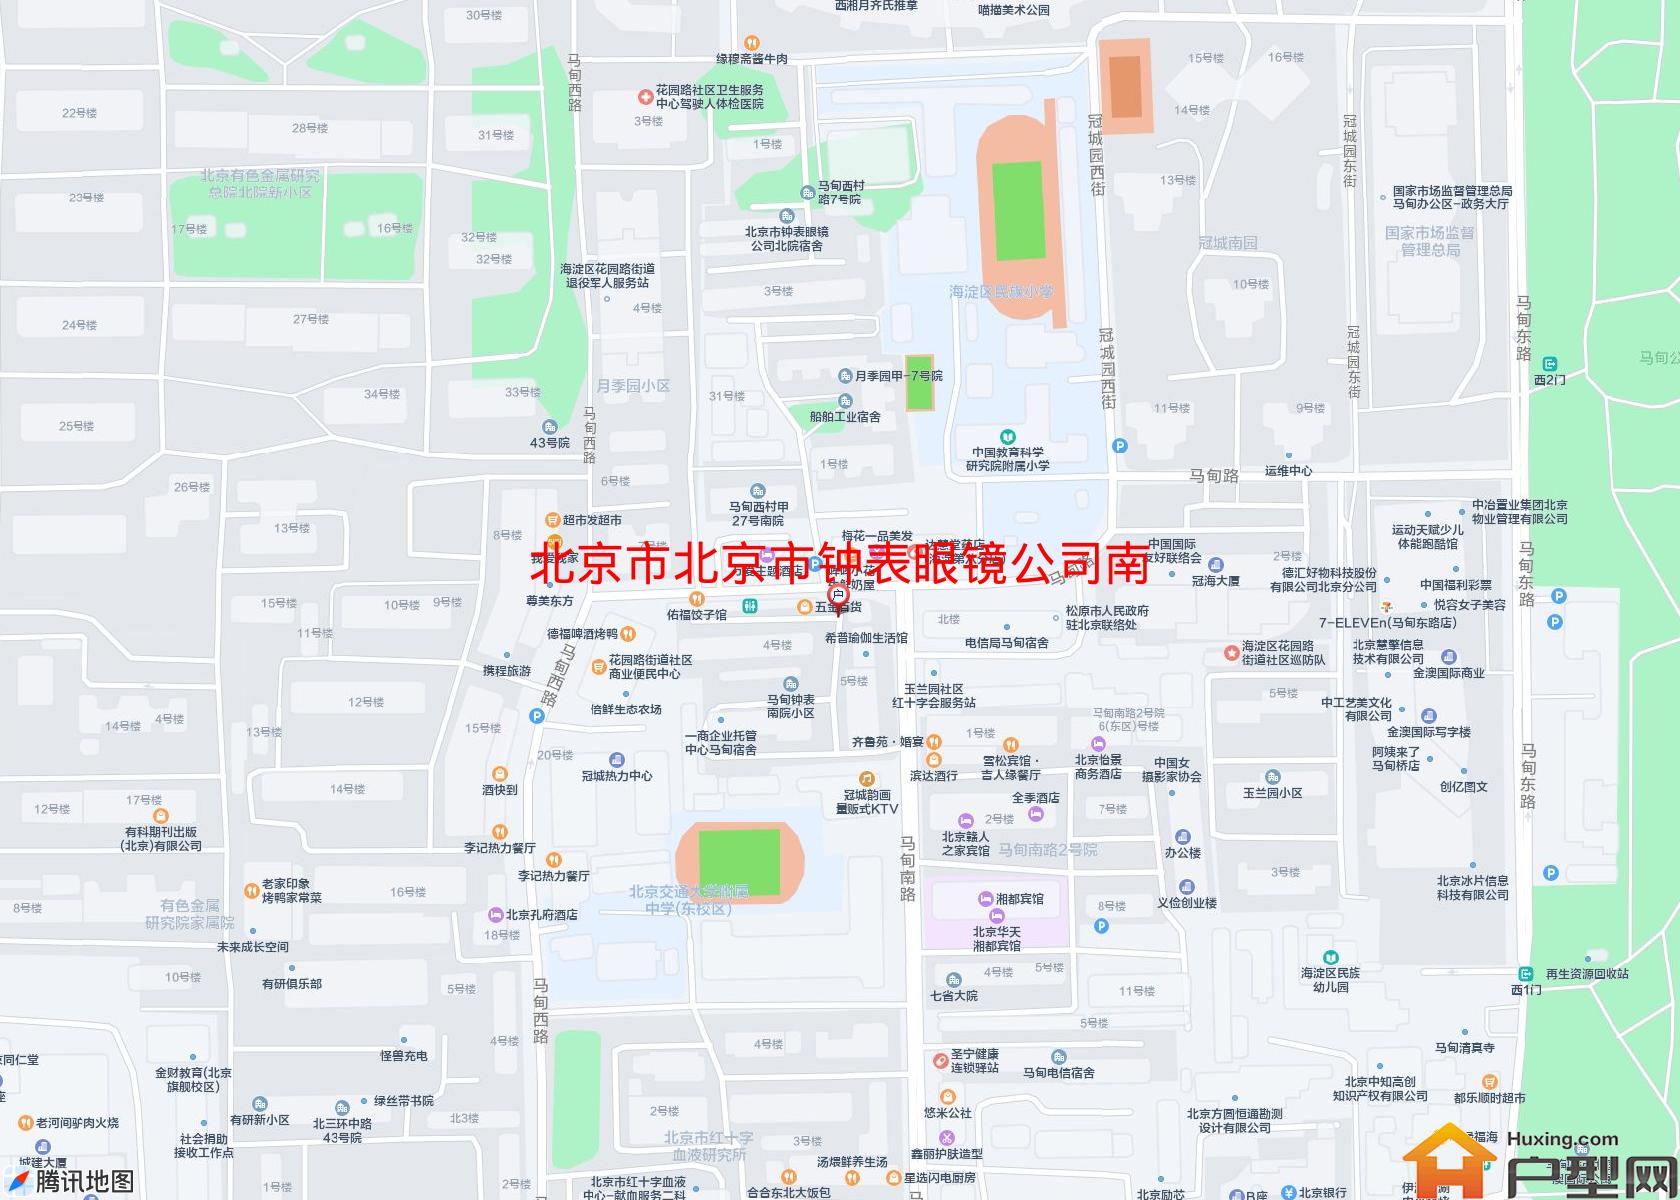 北京市钟表眼镜公司南院宿舍小区 - 户型网